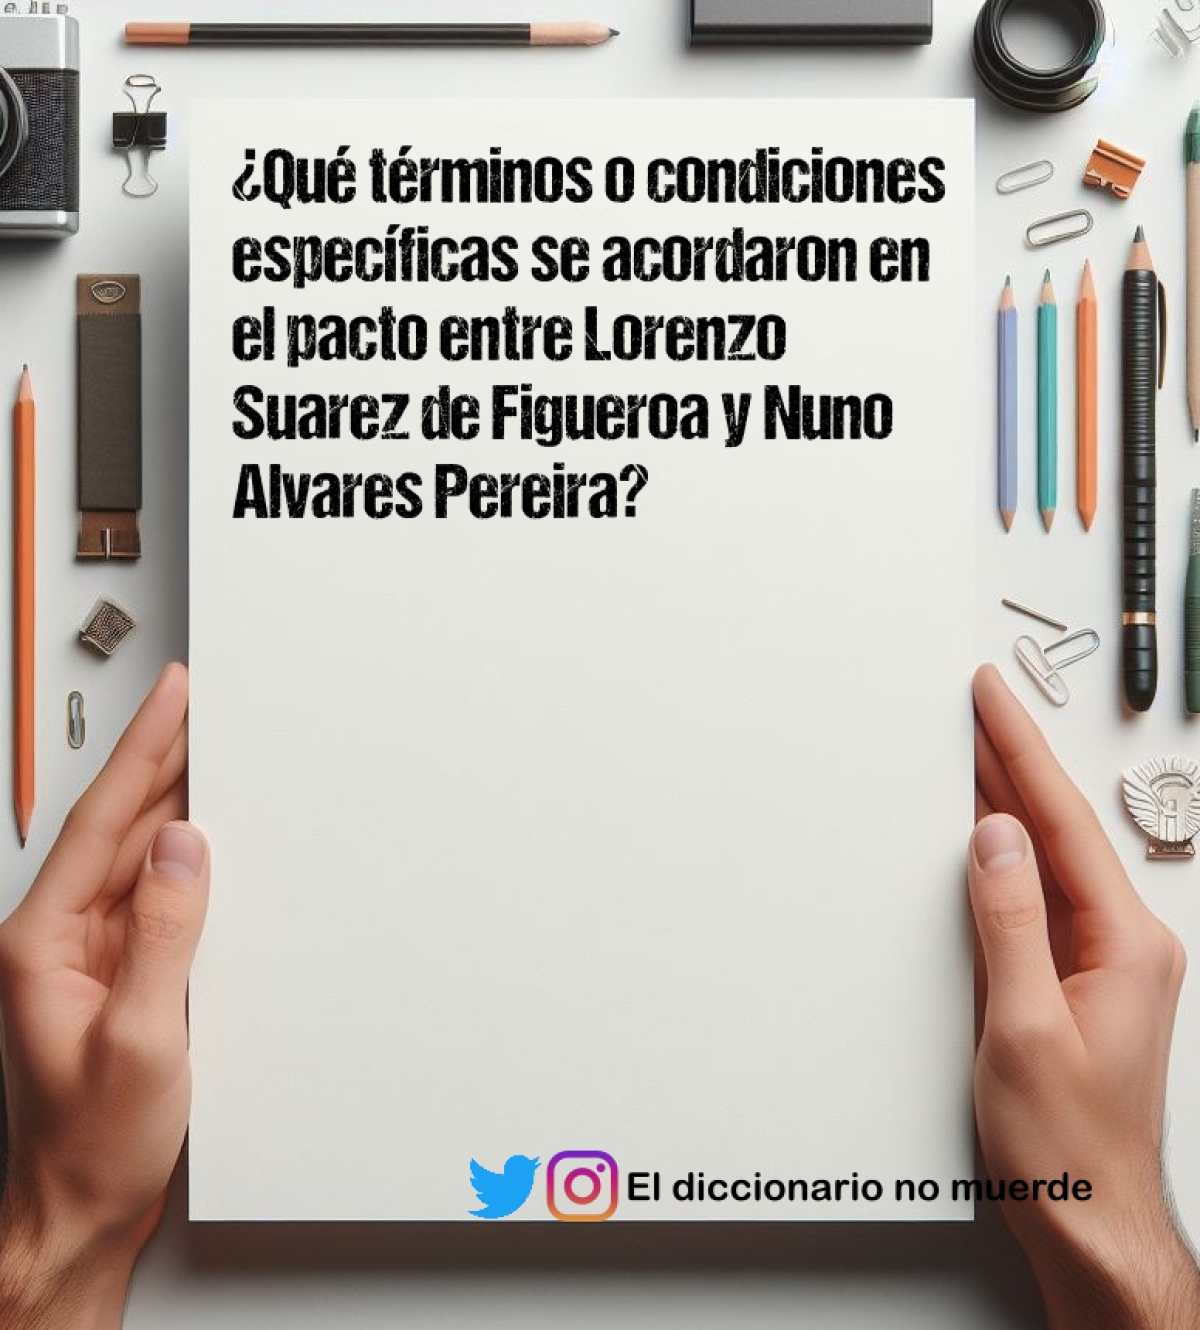 ¿Qué términos o condiciones específicas se acordaron en el pacto entre Lorenzo Suarez de Figueroa y Nuno Alvares Pereira?